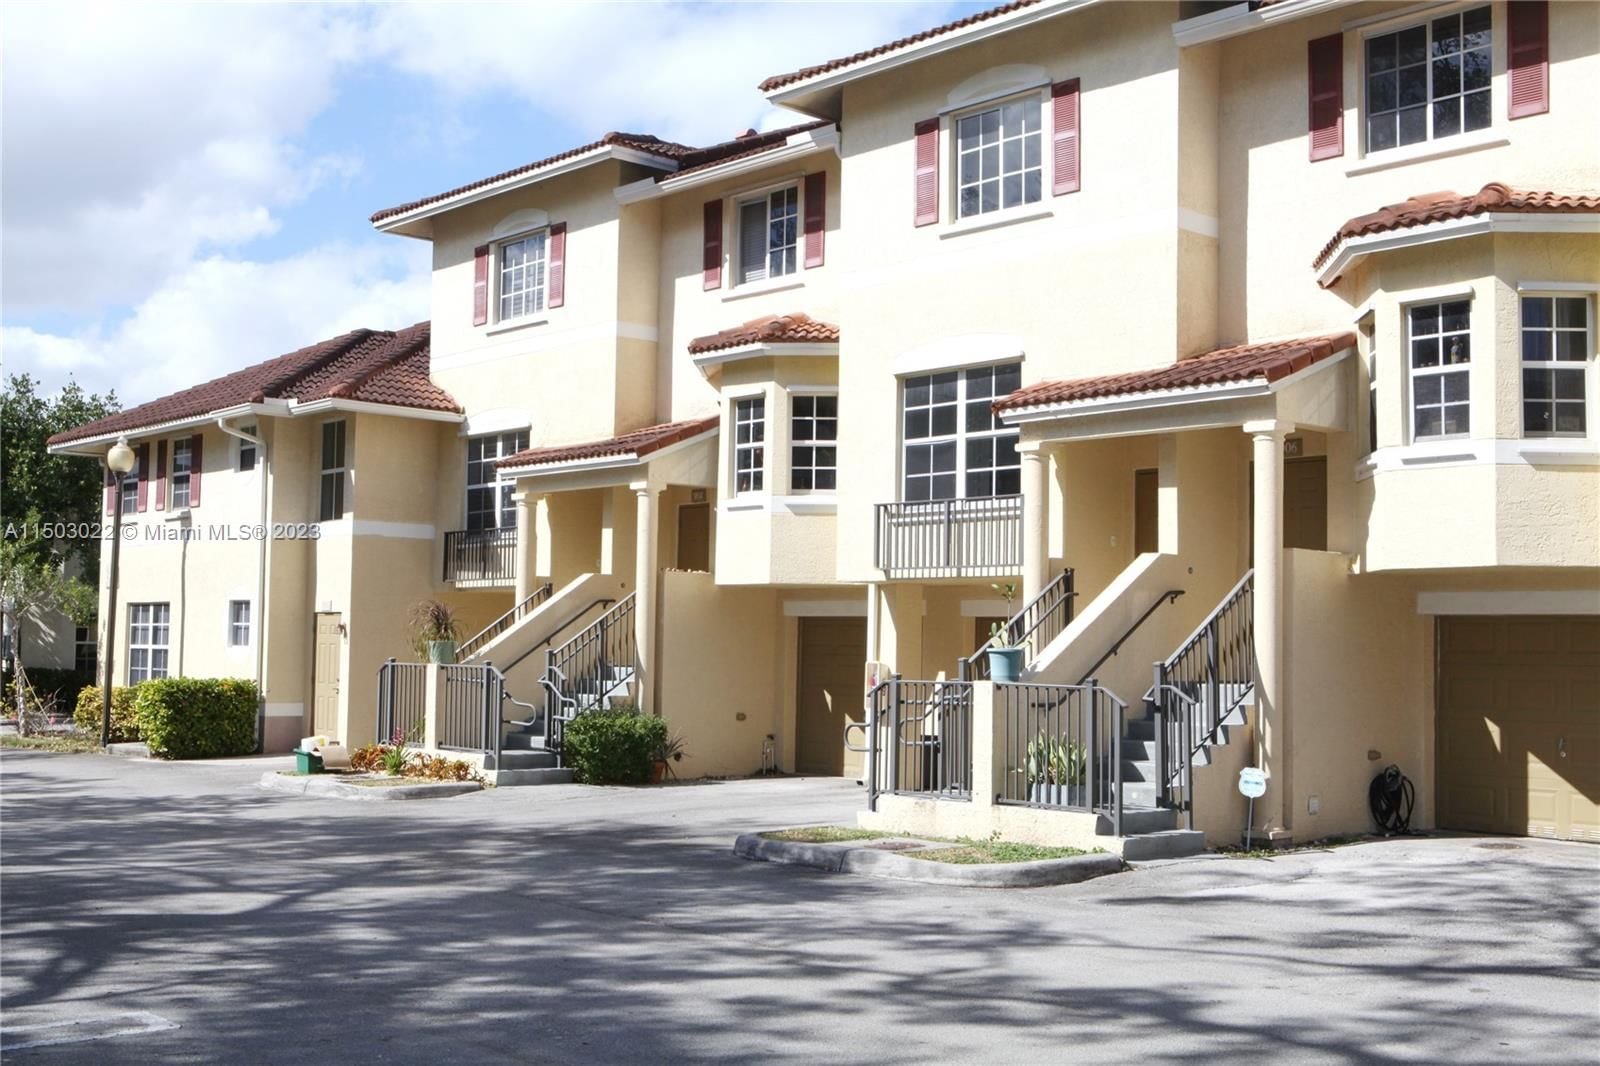 Real estate property located at 8930 8th Ave #905, Miami-Dade County, THE PRESERVE CONDO, Miami, FL